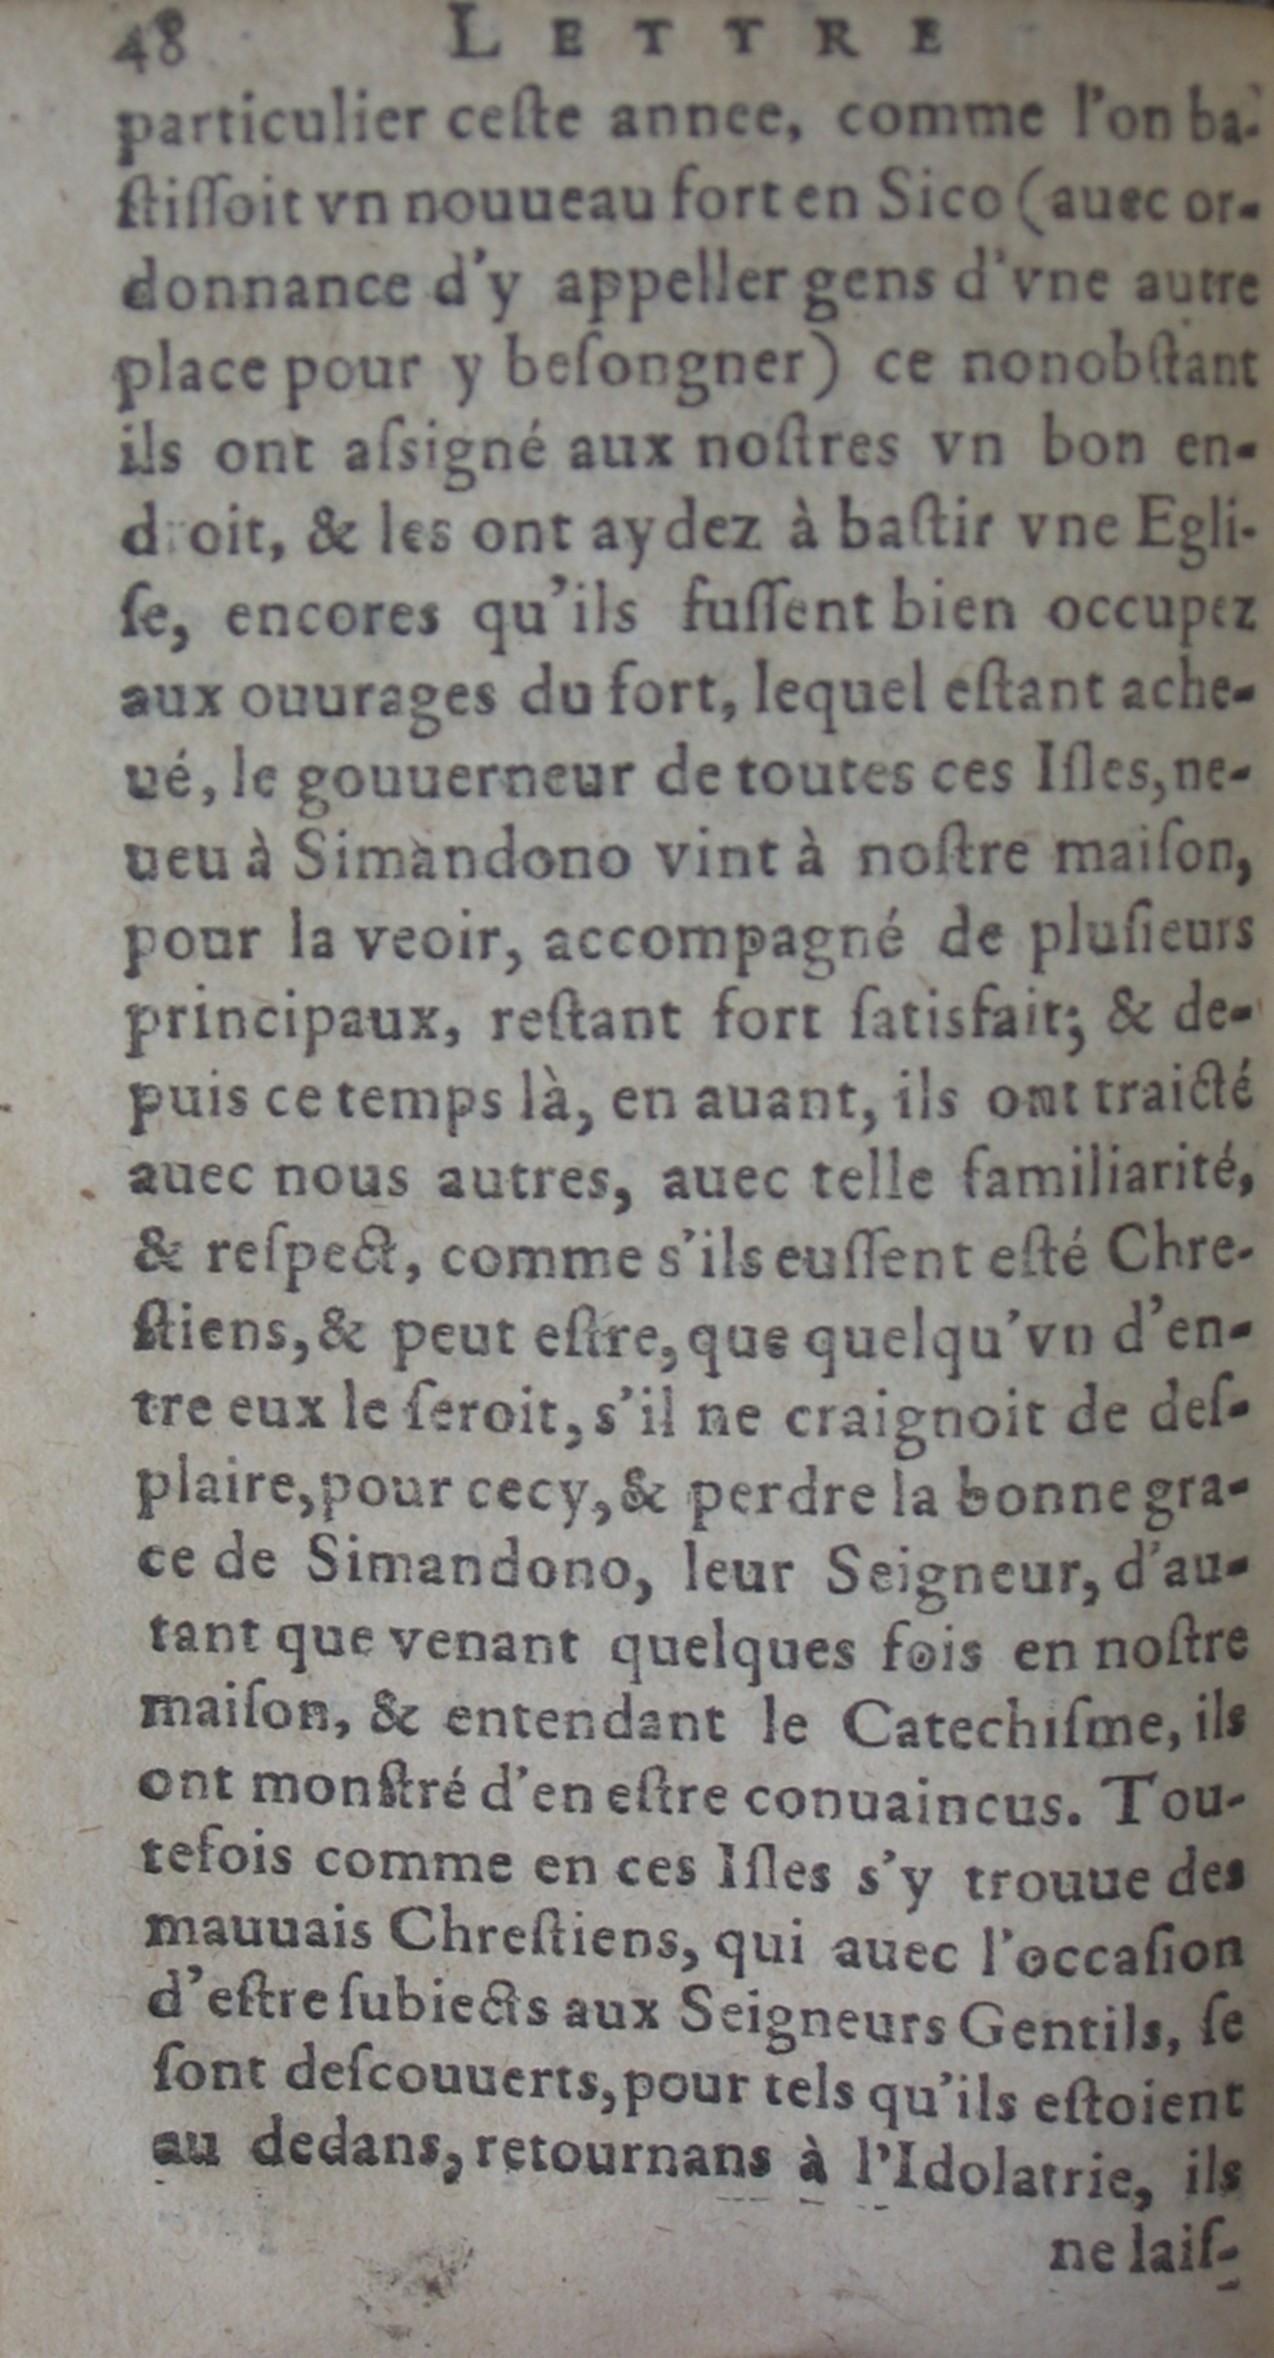 p. 48